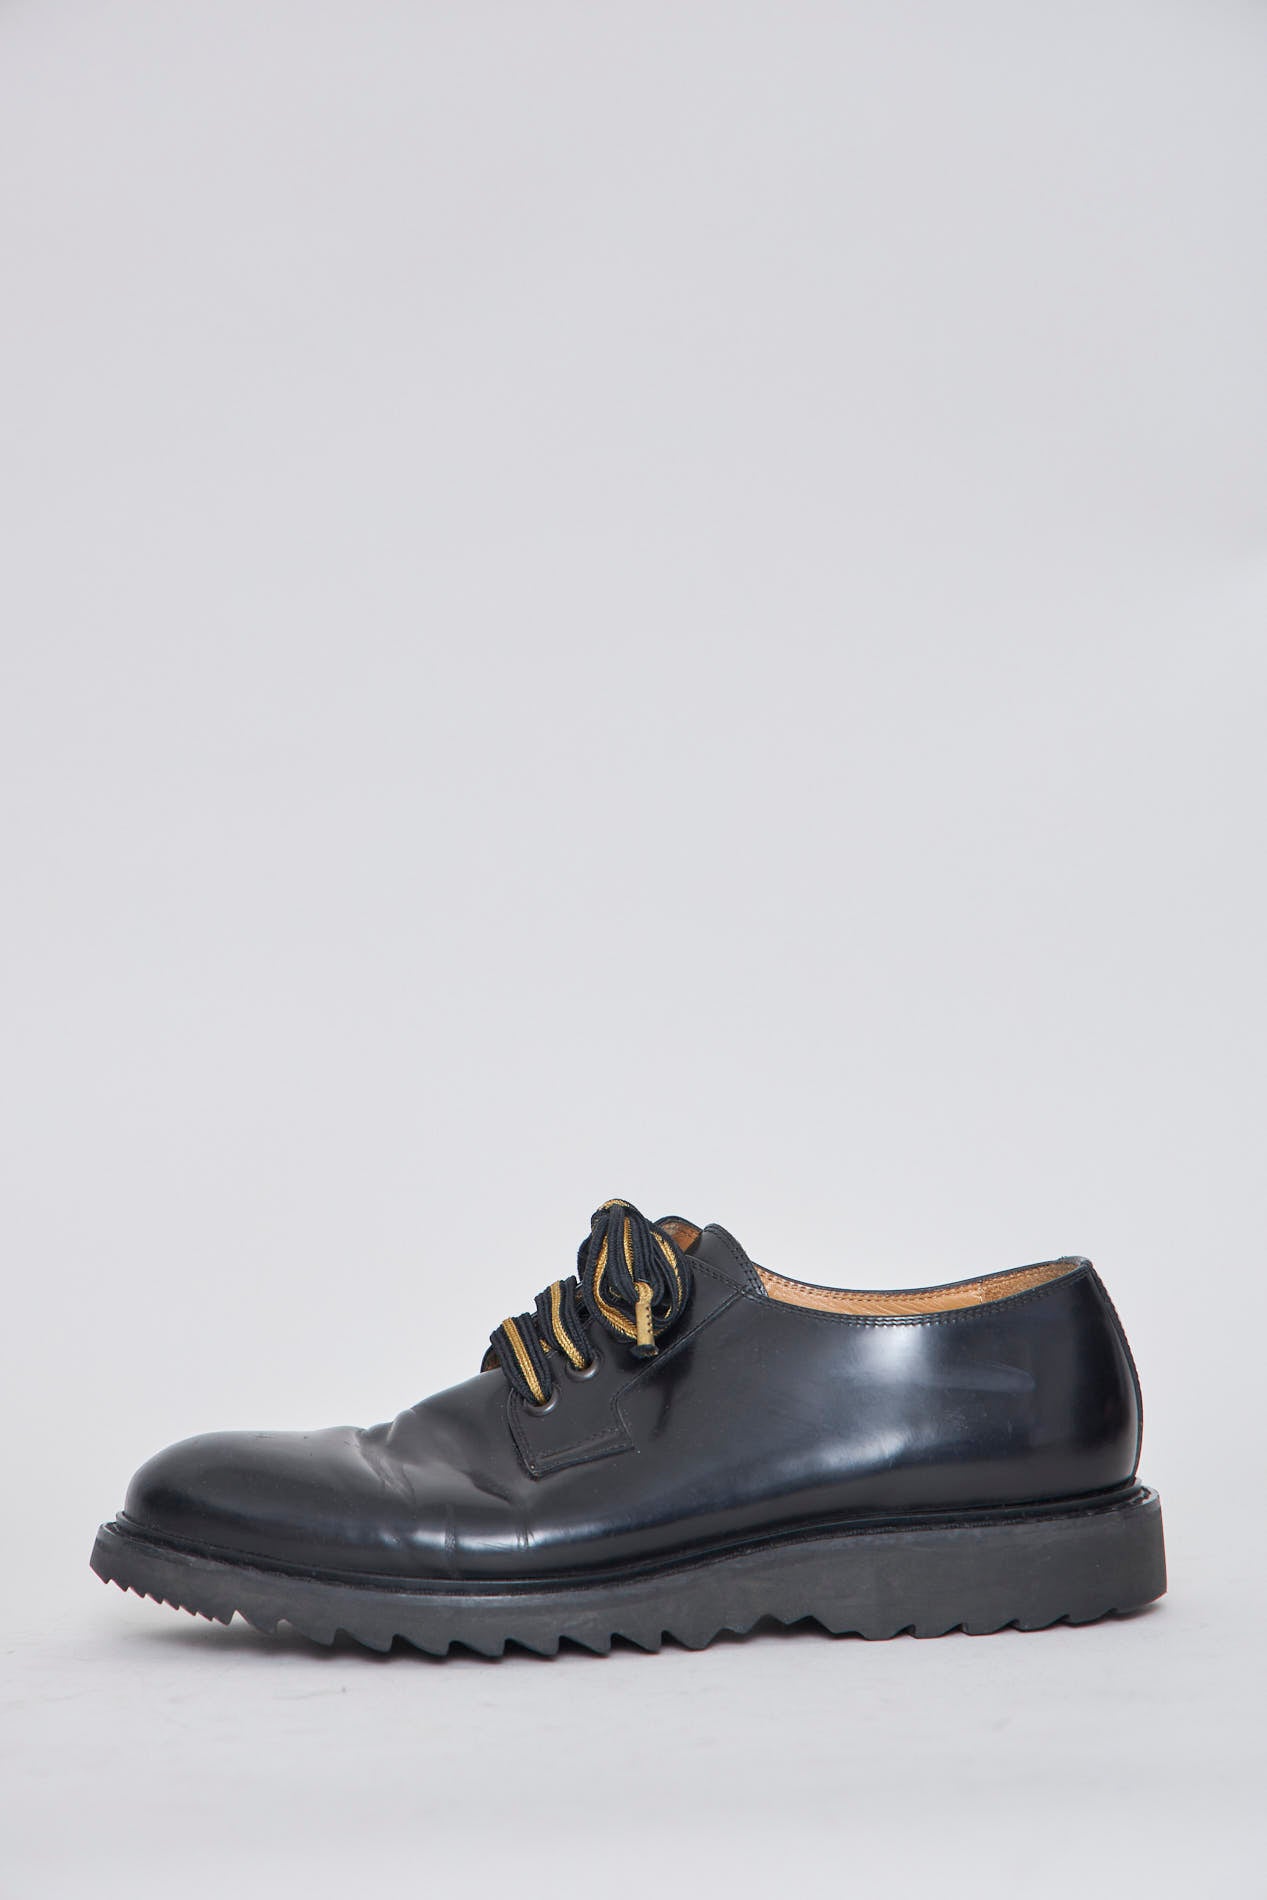 Zapato casual  negro marc jacobs talla 42 480